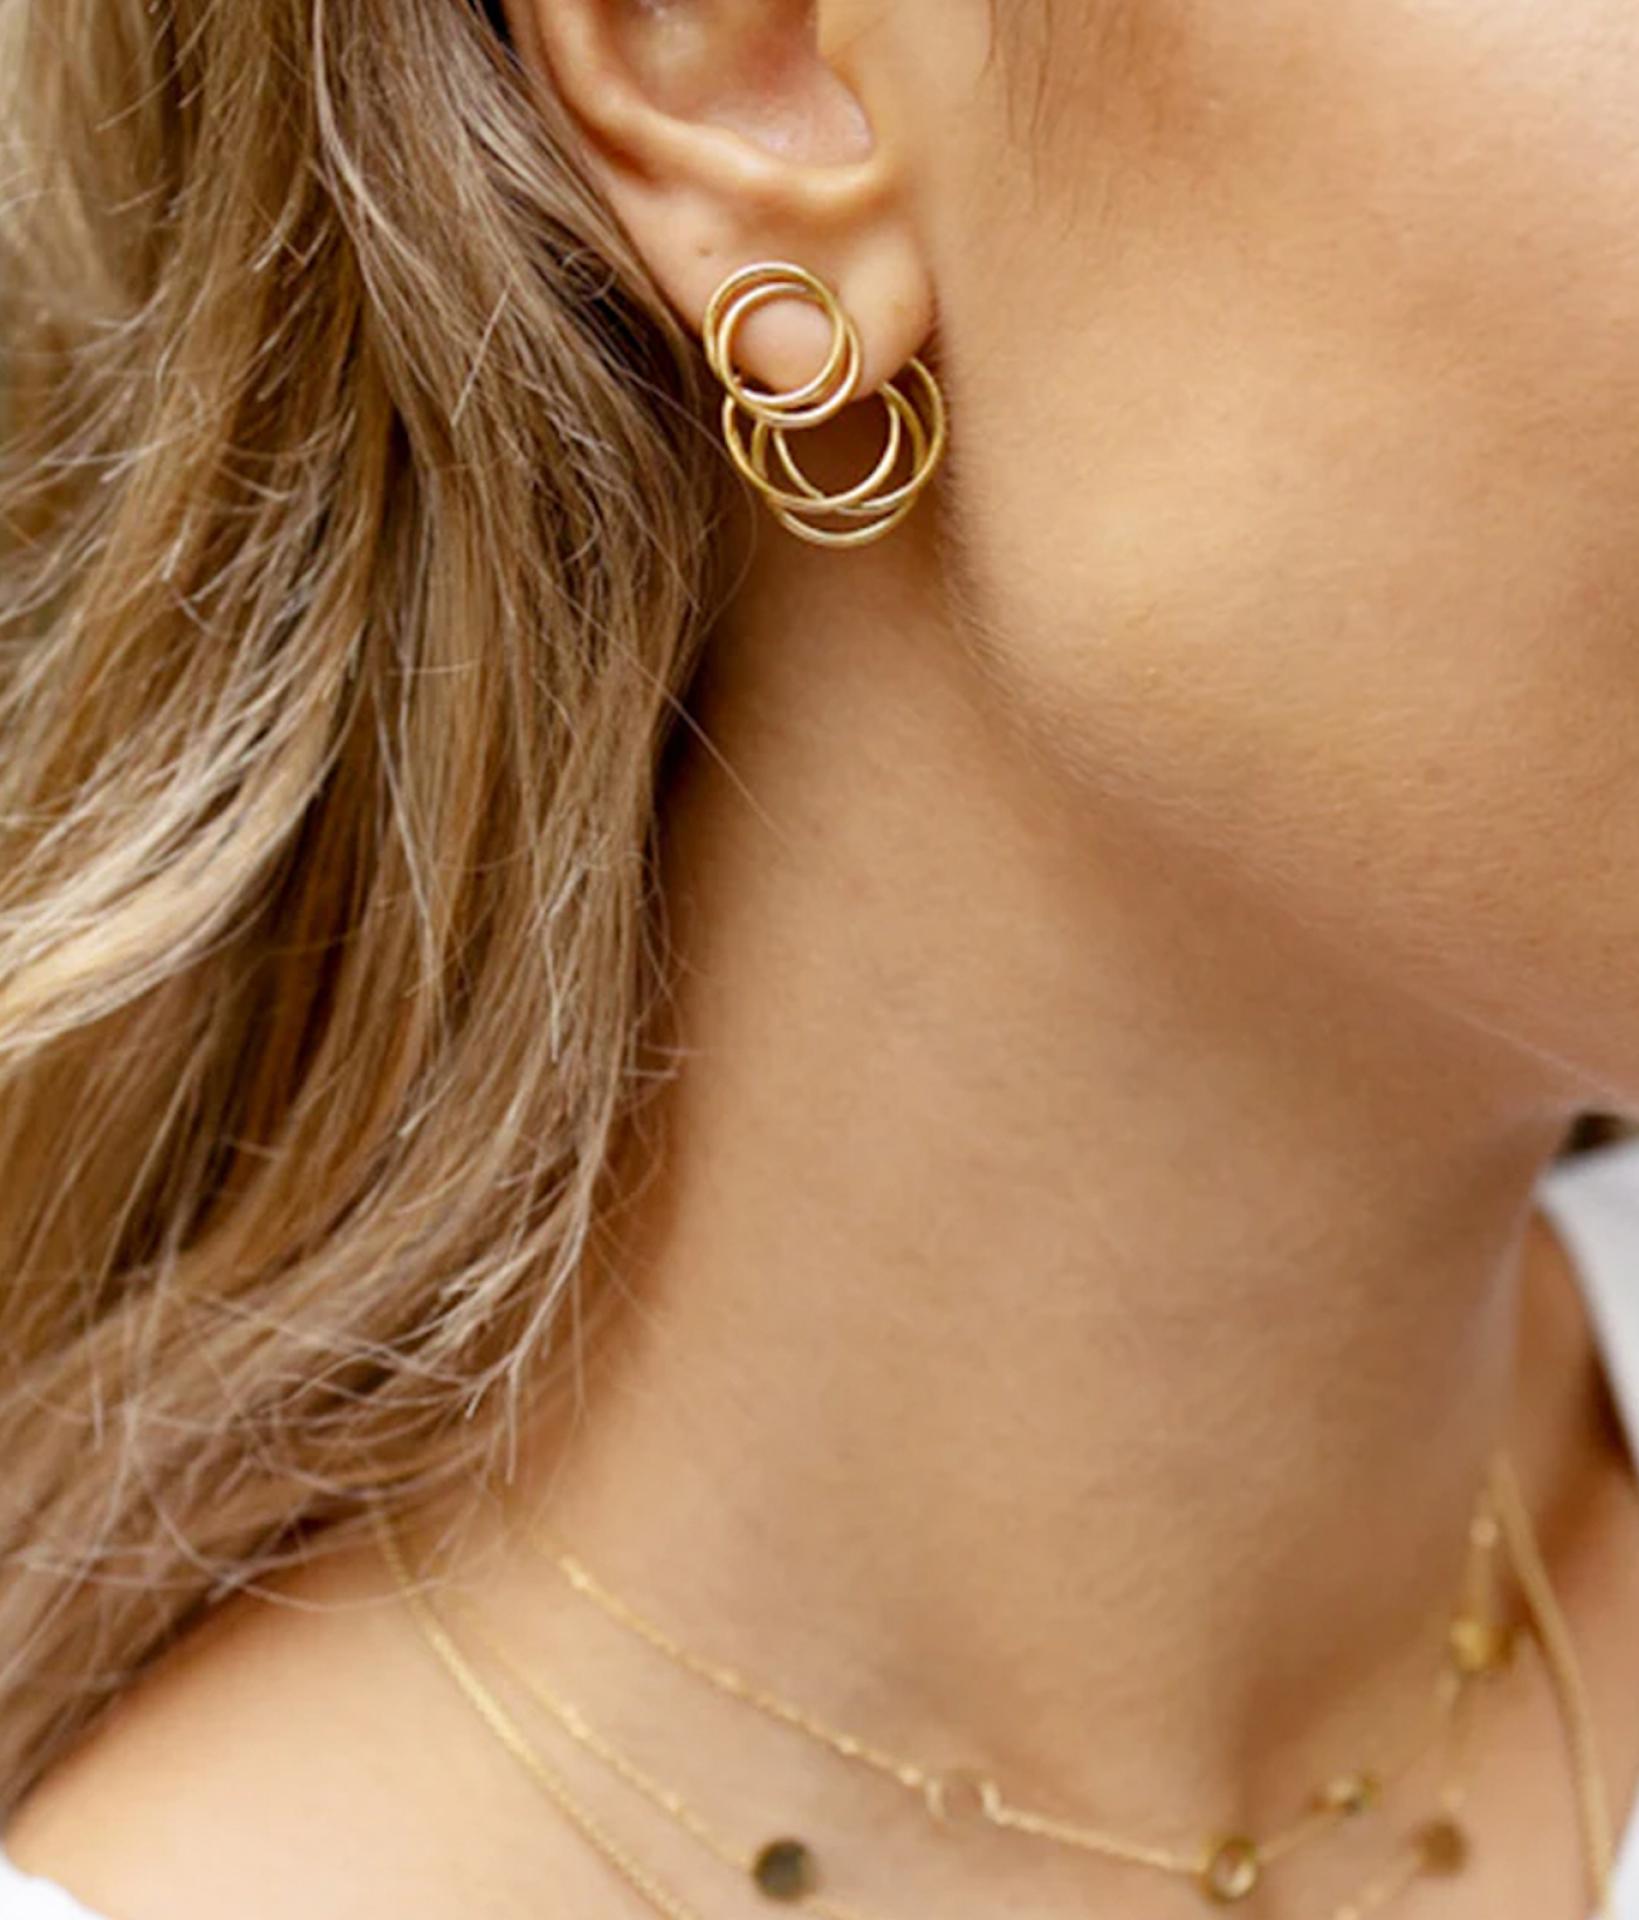 junge Frau mit blonden Haaren und seitlichen Profil trägt zweiteilige ohrstecker von Zag Bijoux aus goldenen Ringen